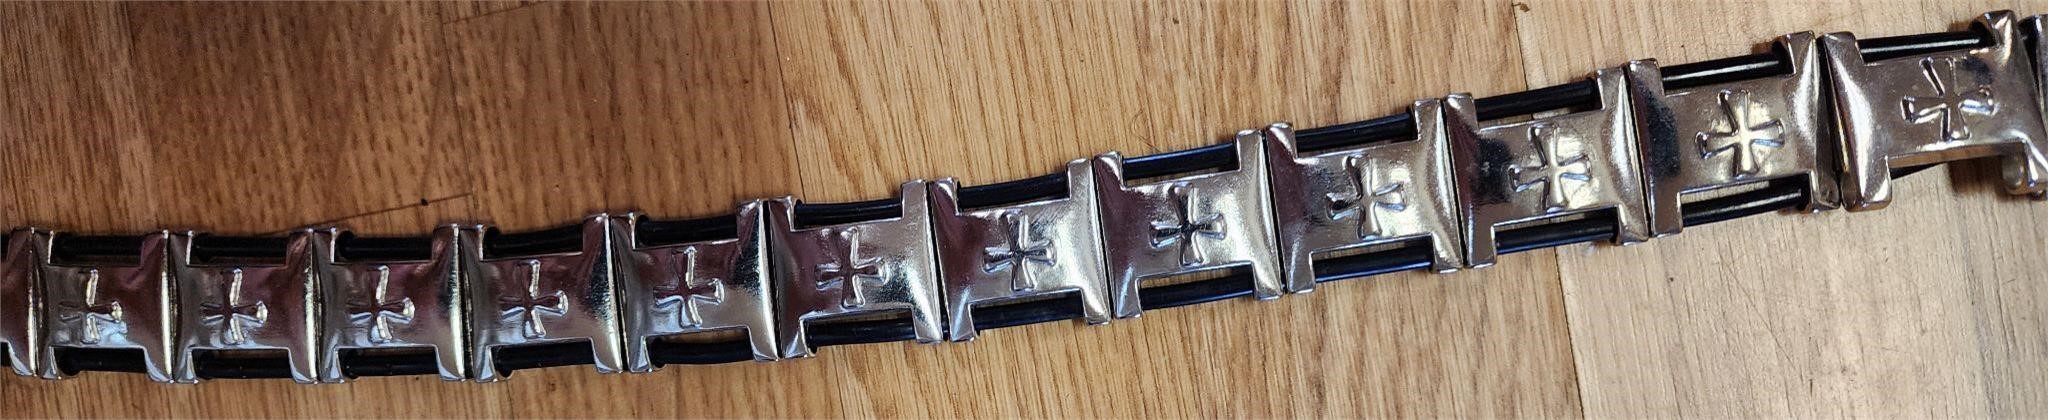 2 VTG Harley Belts leather & a  silver belts